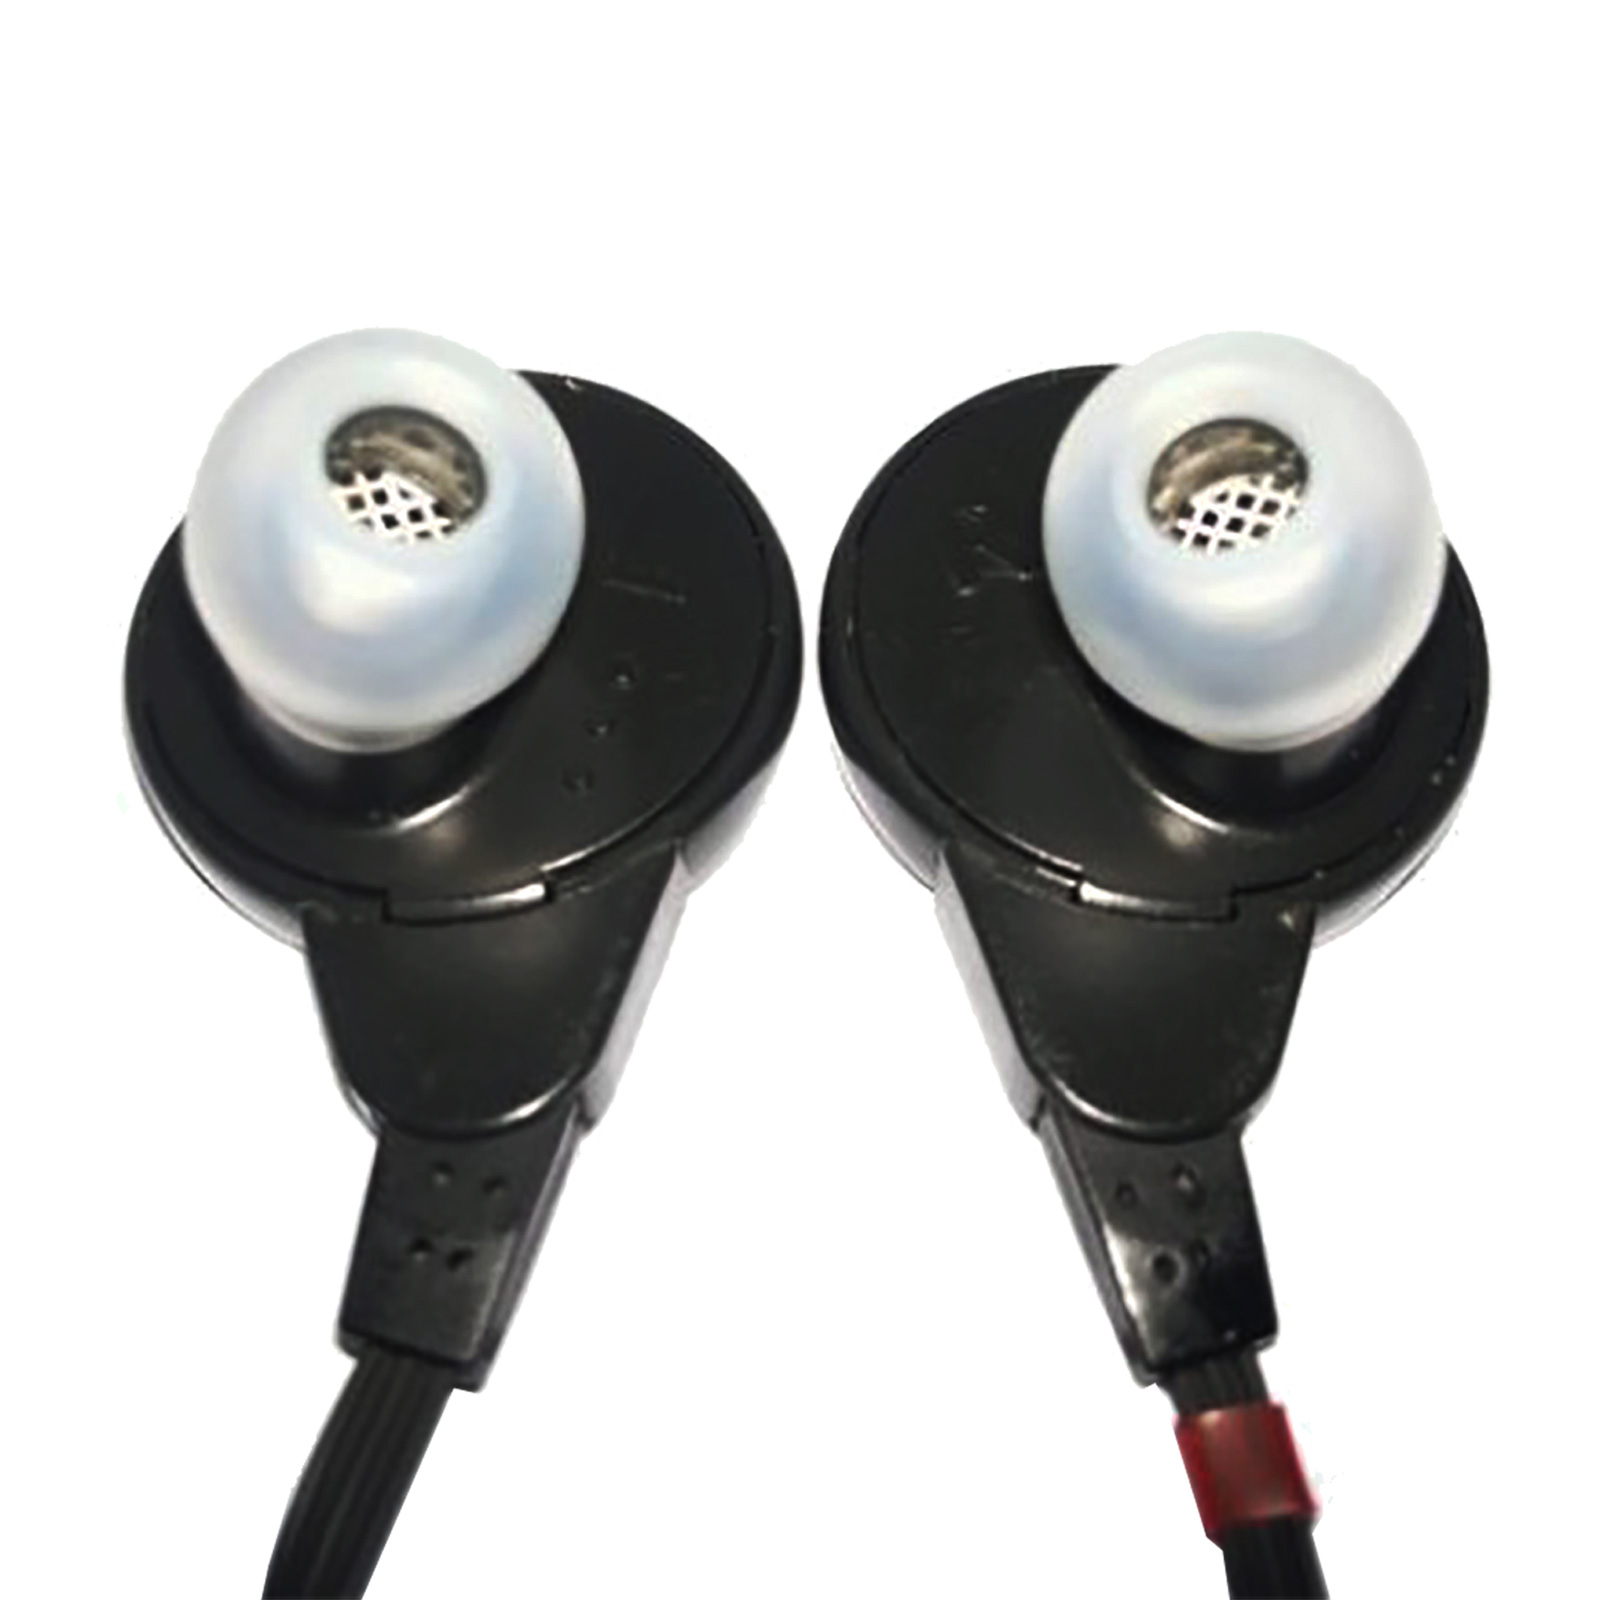 SRS-002 In-Ear Electrostatic Earspeaker System, by STAX Audio Sanctuary